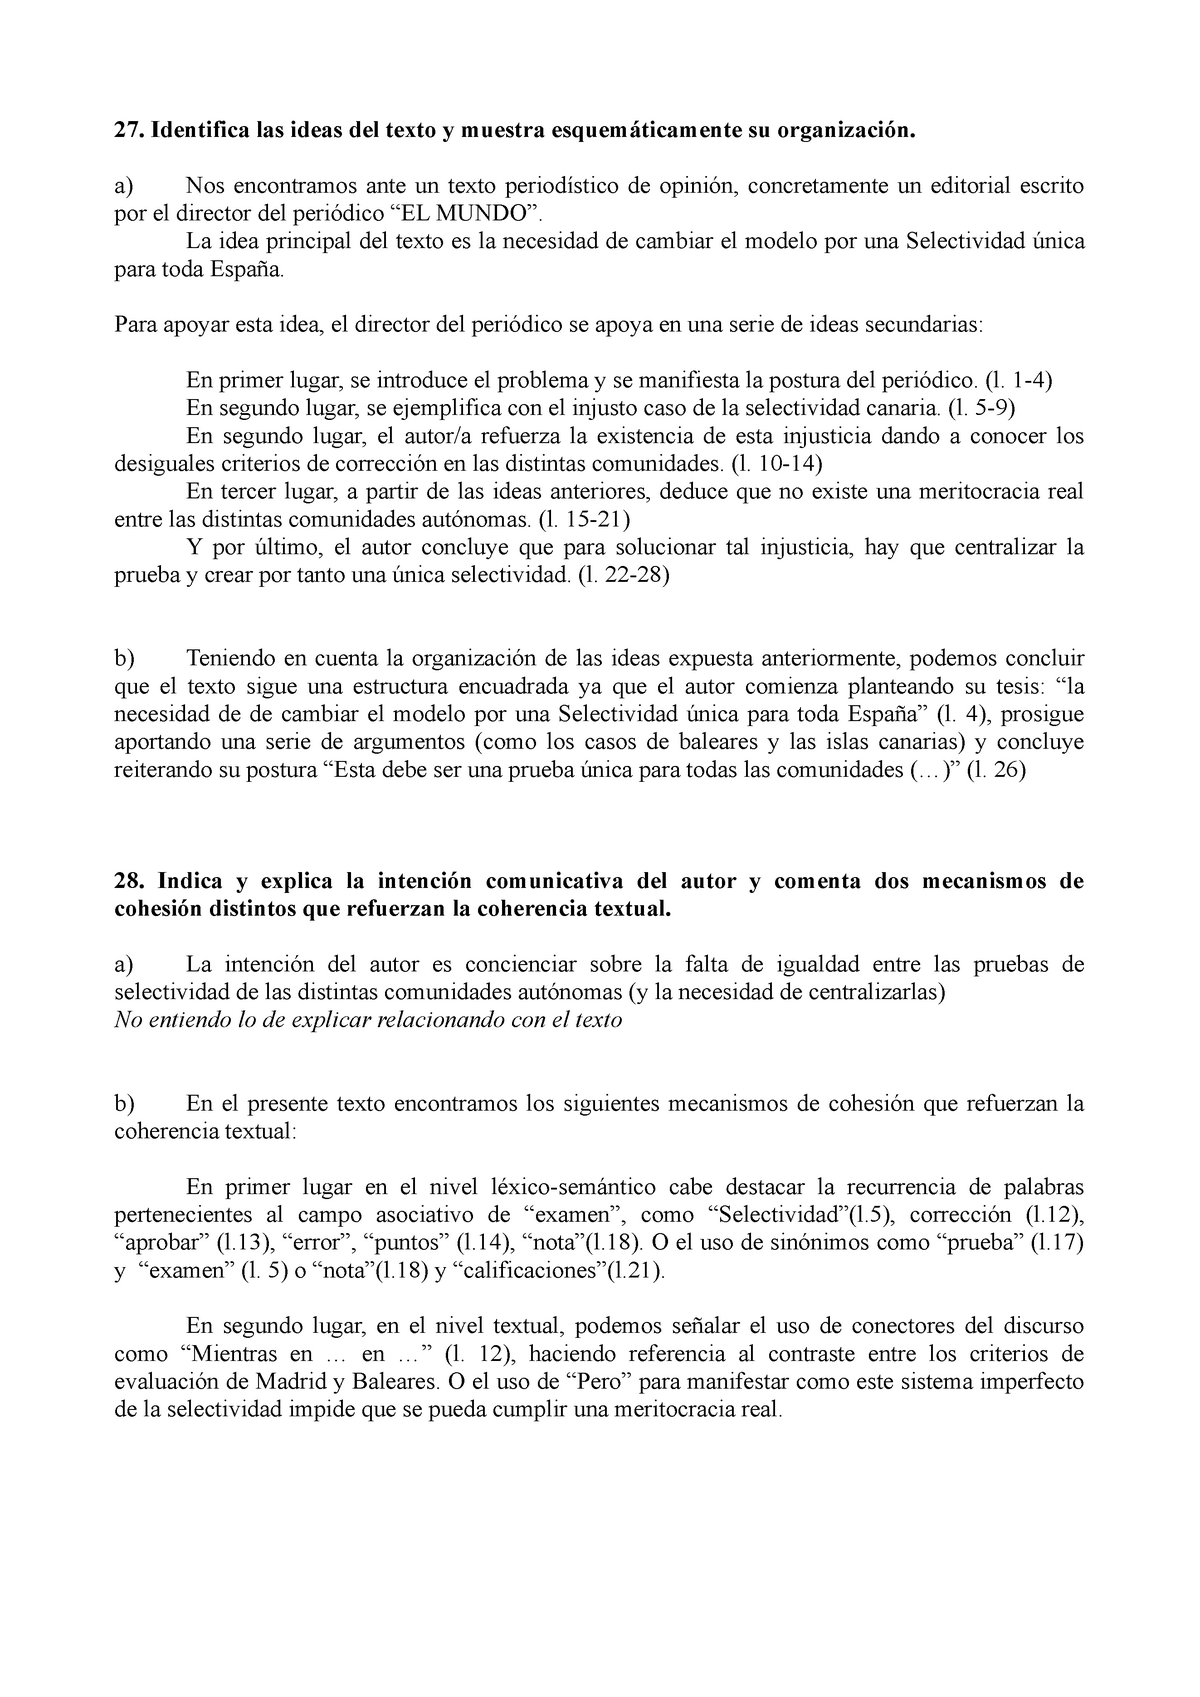 Unirse fusión colonia Comentario texto "Una única selectividad" - Lengua castellana y Literatura  - IES Fray Luis de León - Studocu